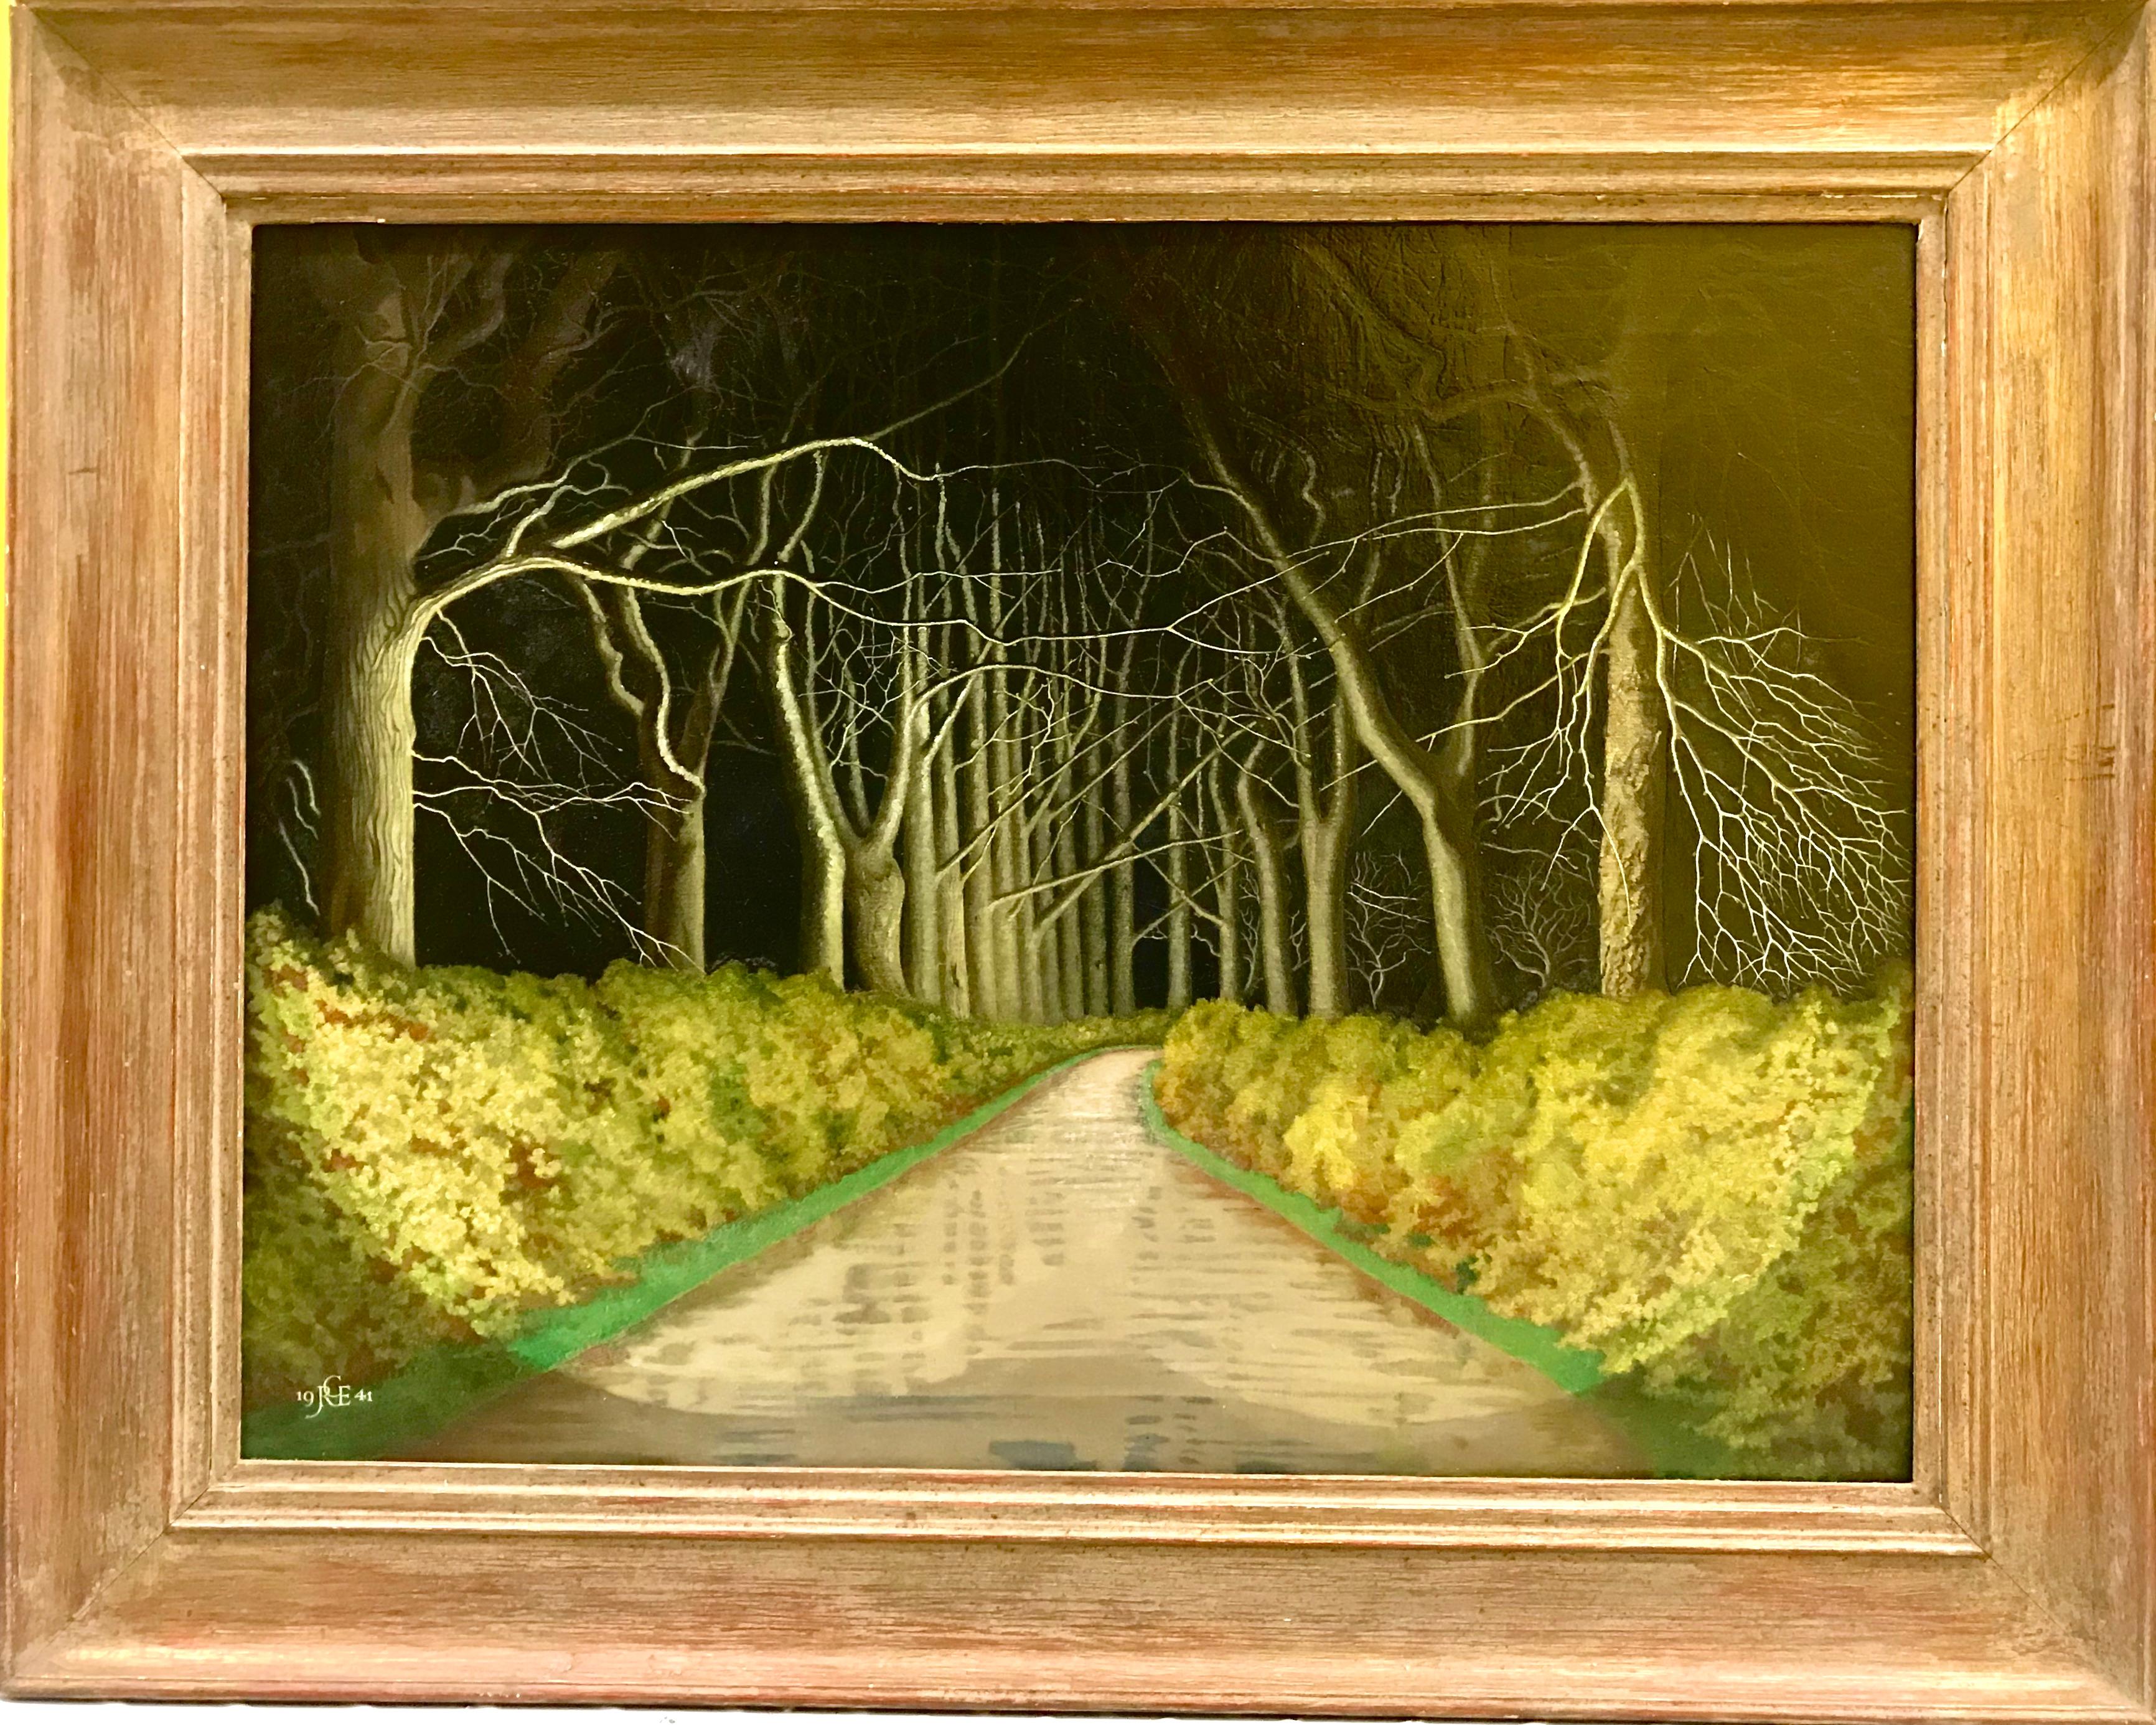 Drive de nuit - Painting de James Robert Granville Exley